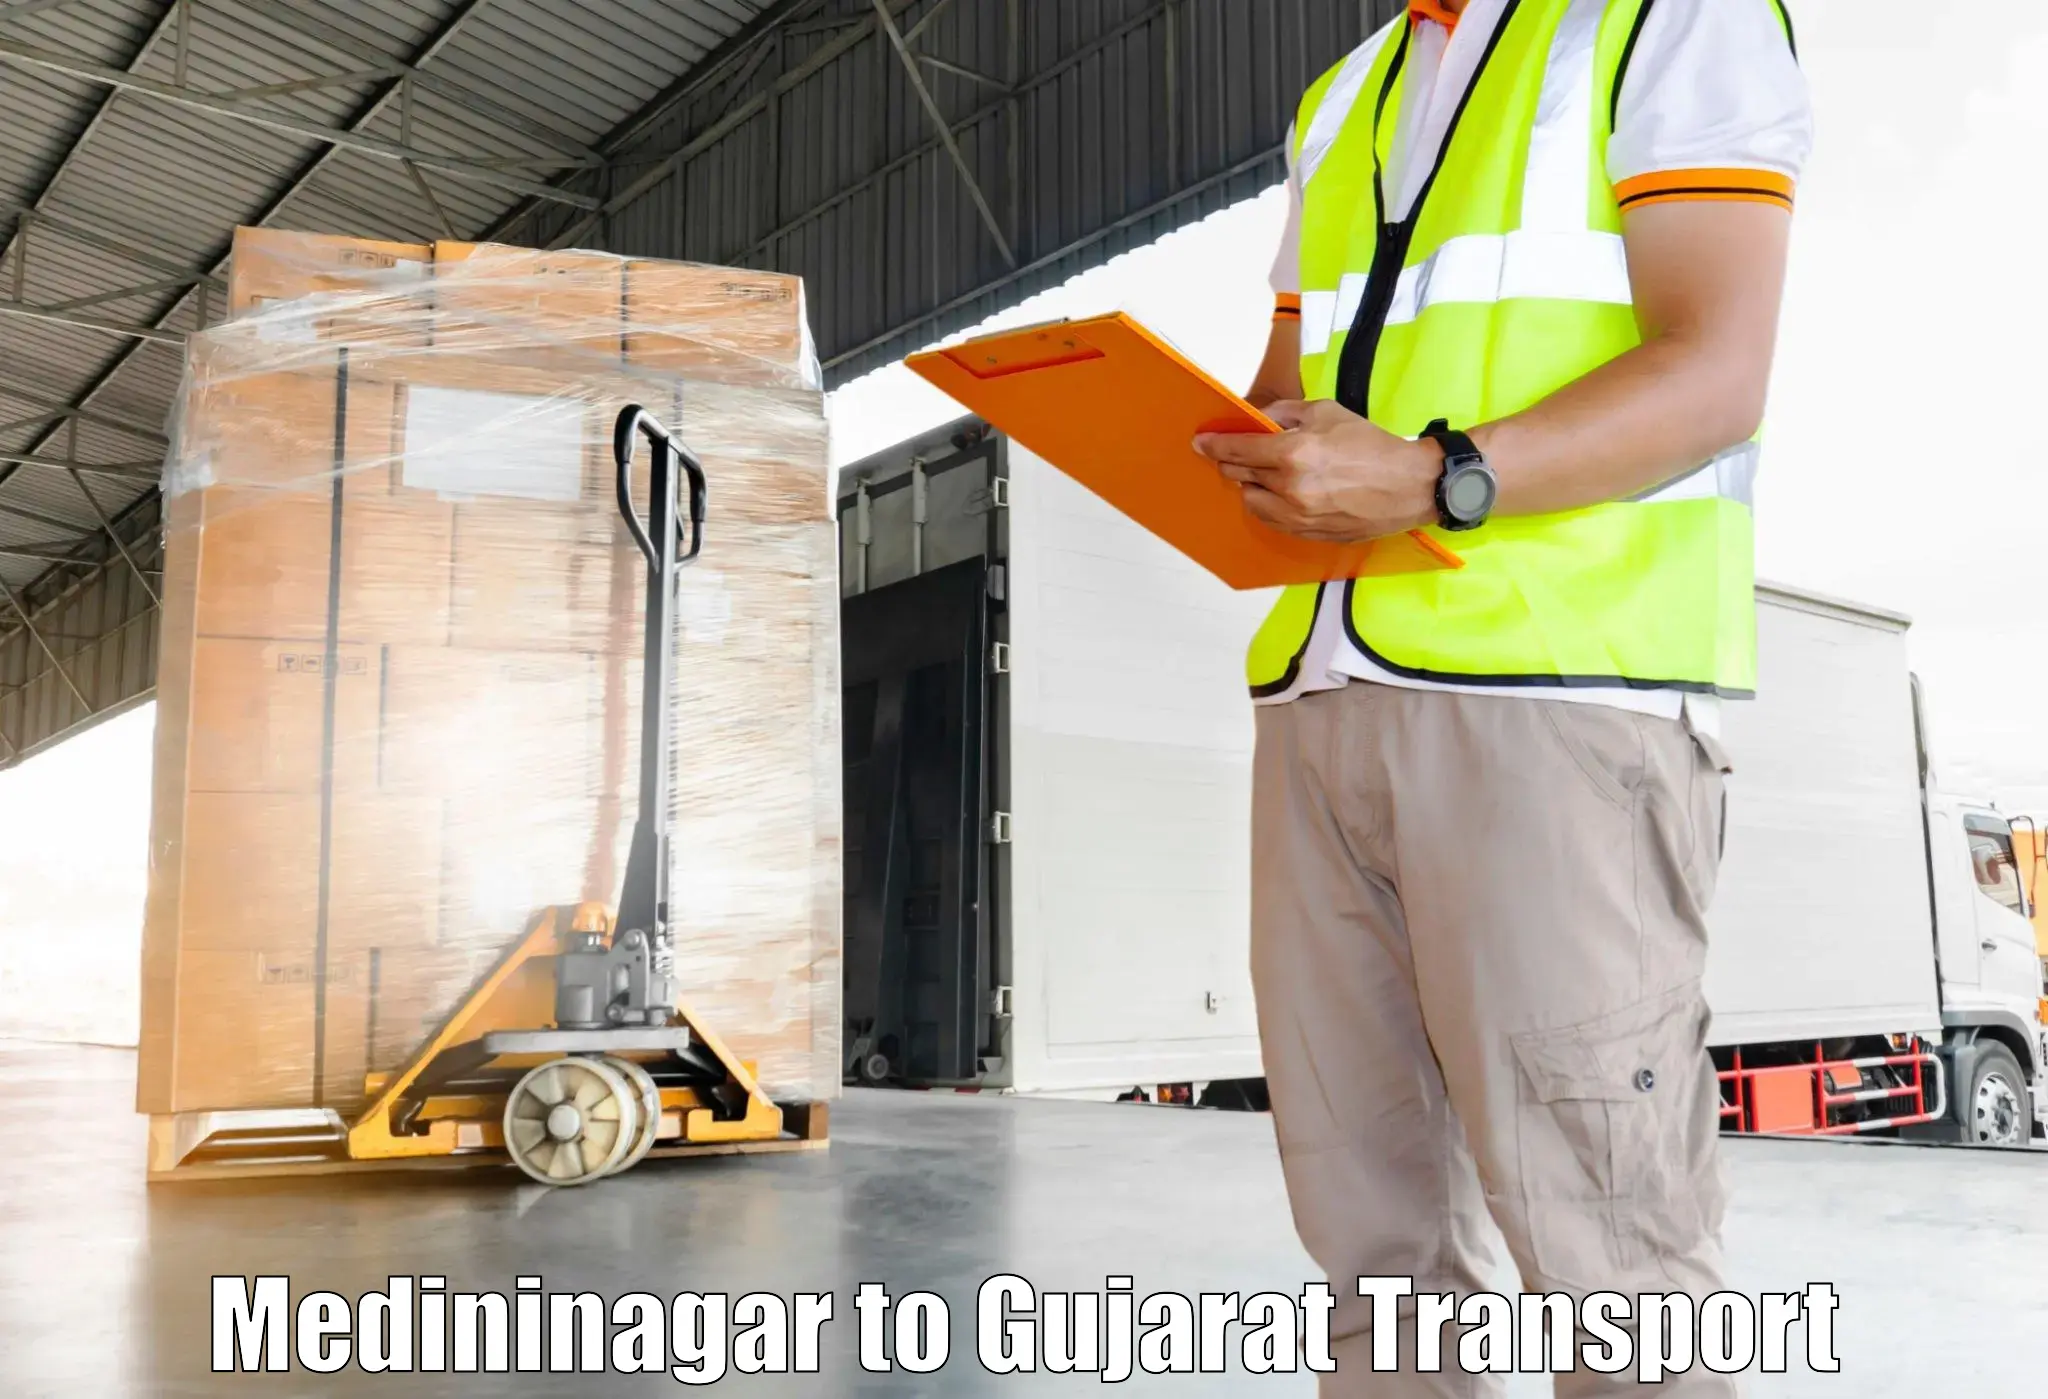 Cargo train transport services Medininagar to Godhra